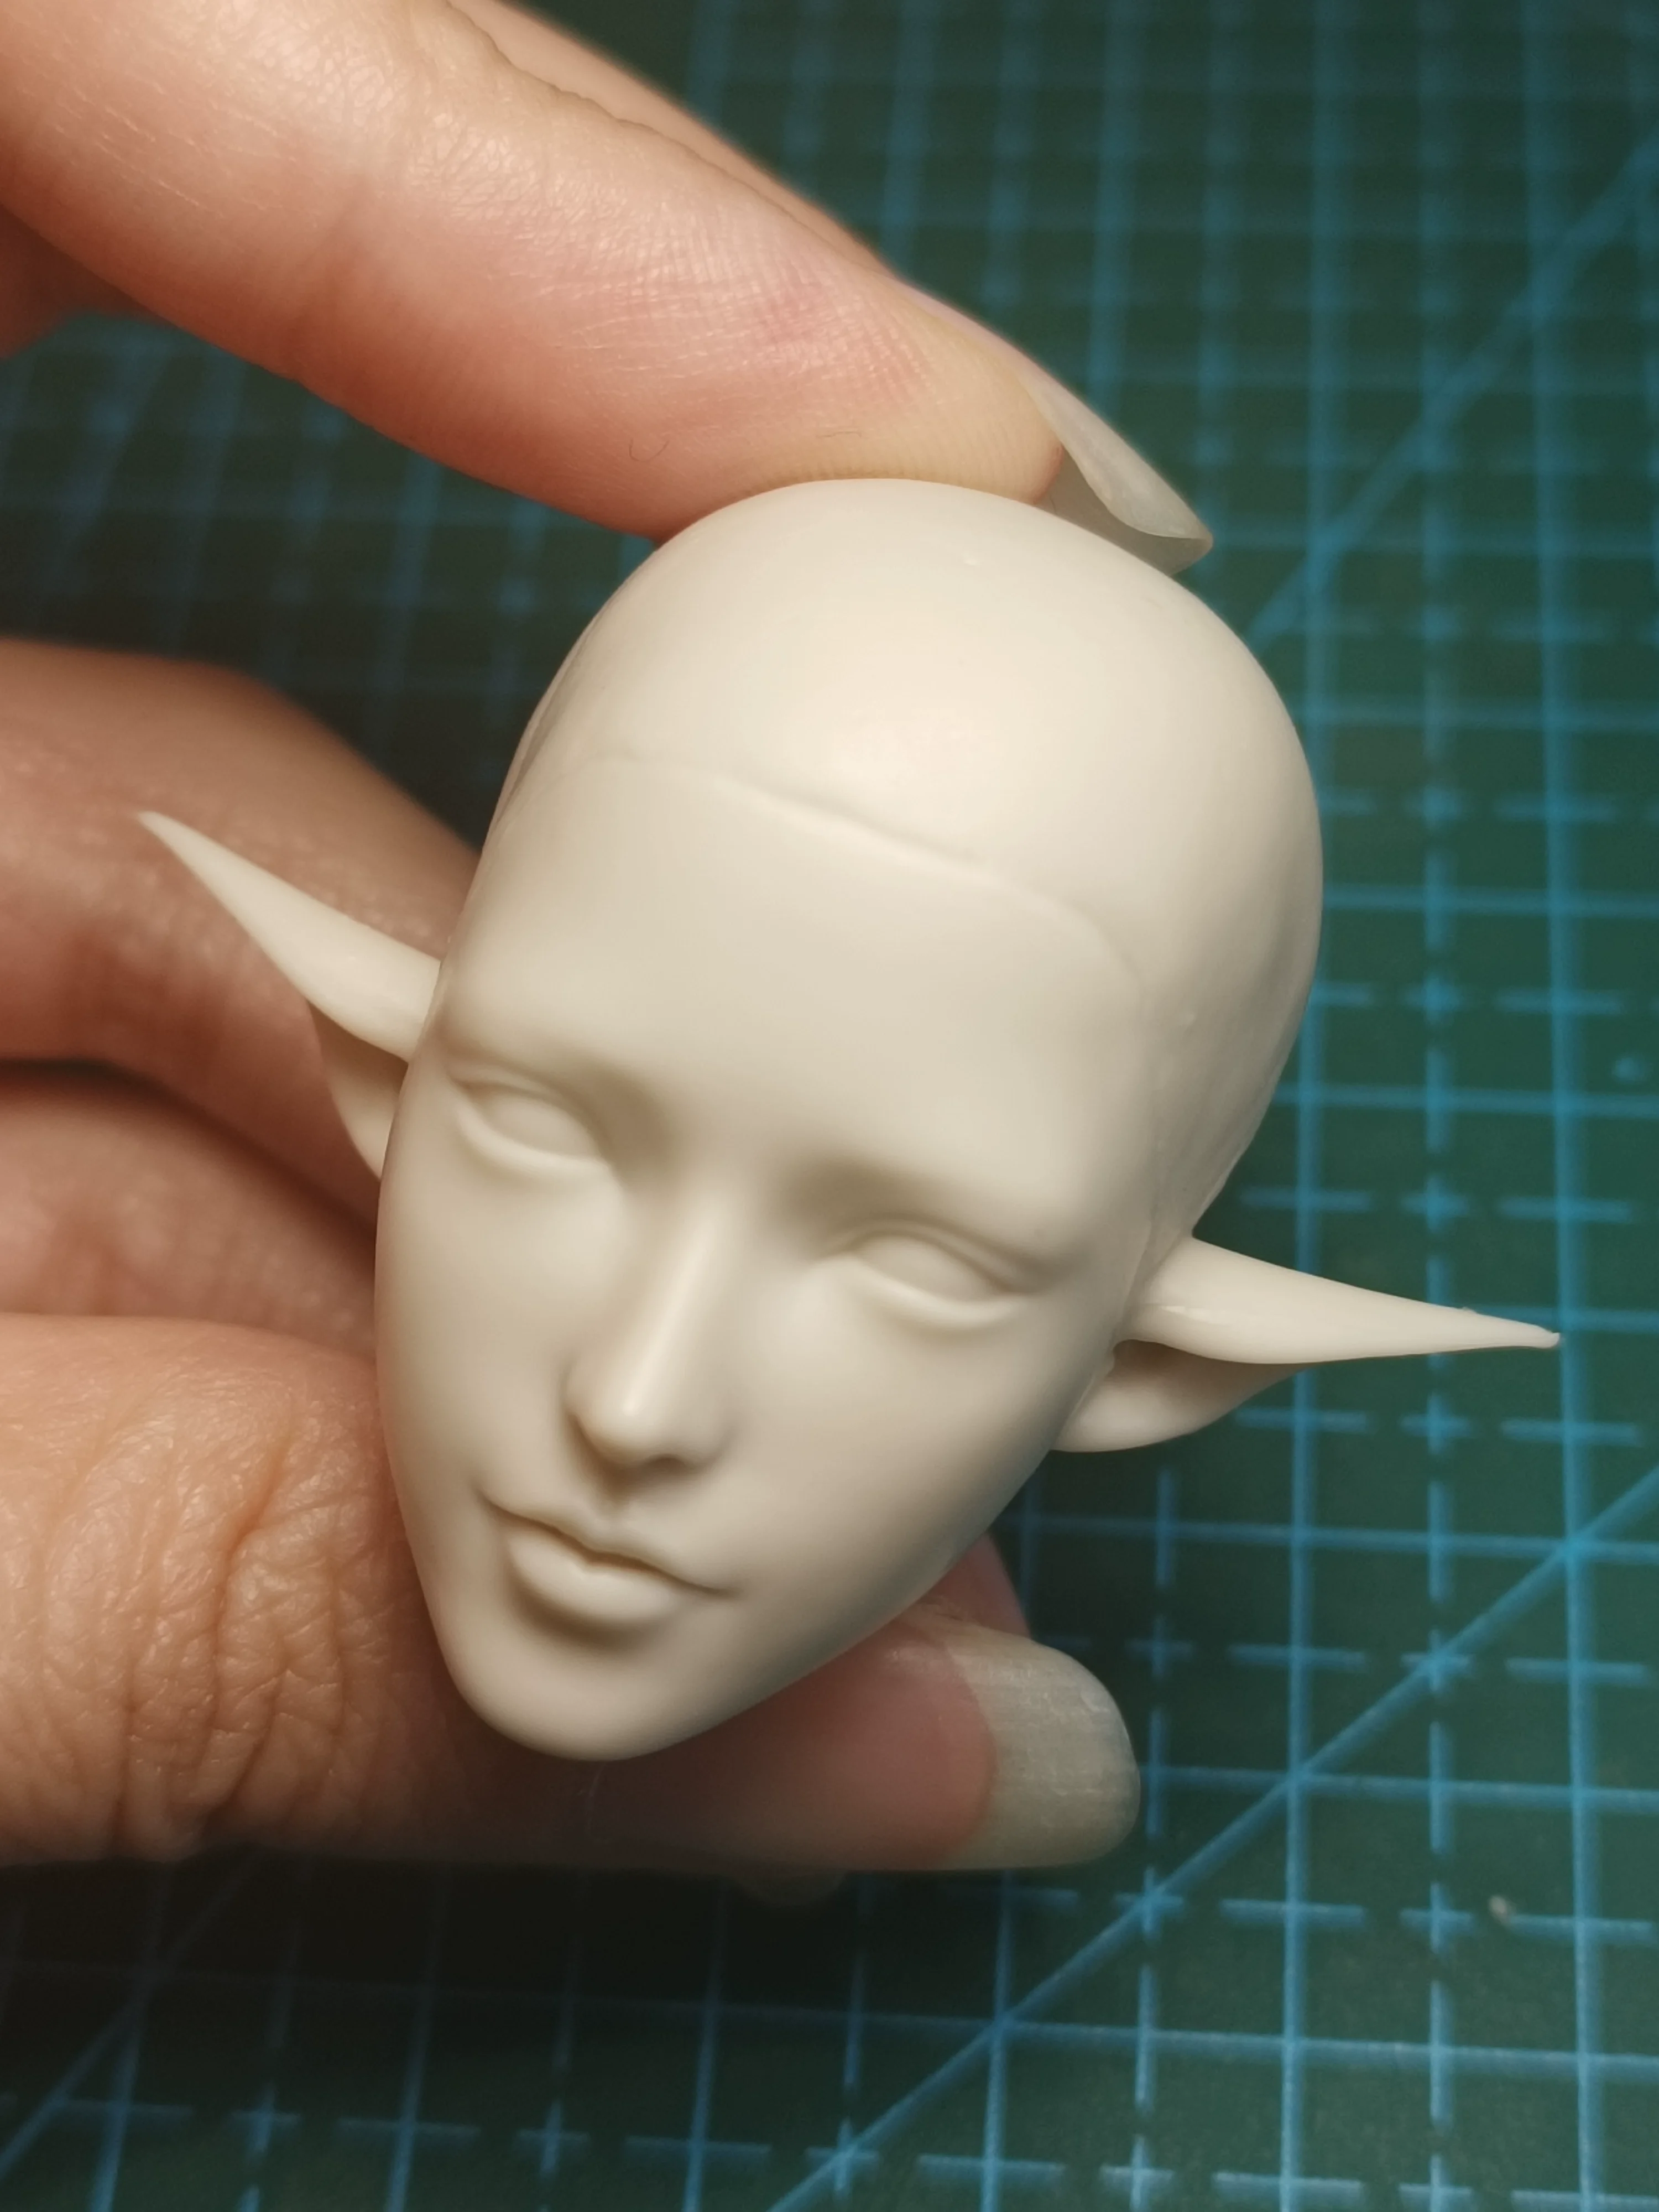 

Статуя головы солдата Elf Ear Beauty, статуэтка головы, аниме Неокрашенная, 1/6 резная модель, подходит для коллекции экшн-фигурок 12 дюймов